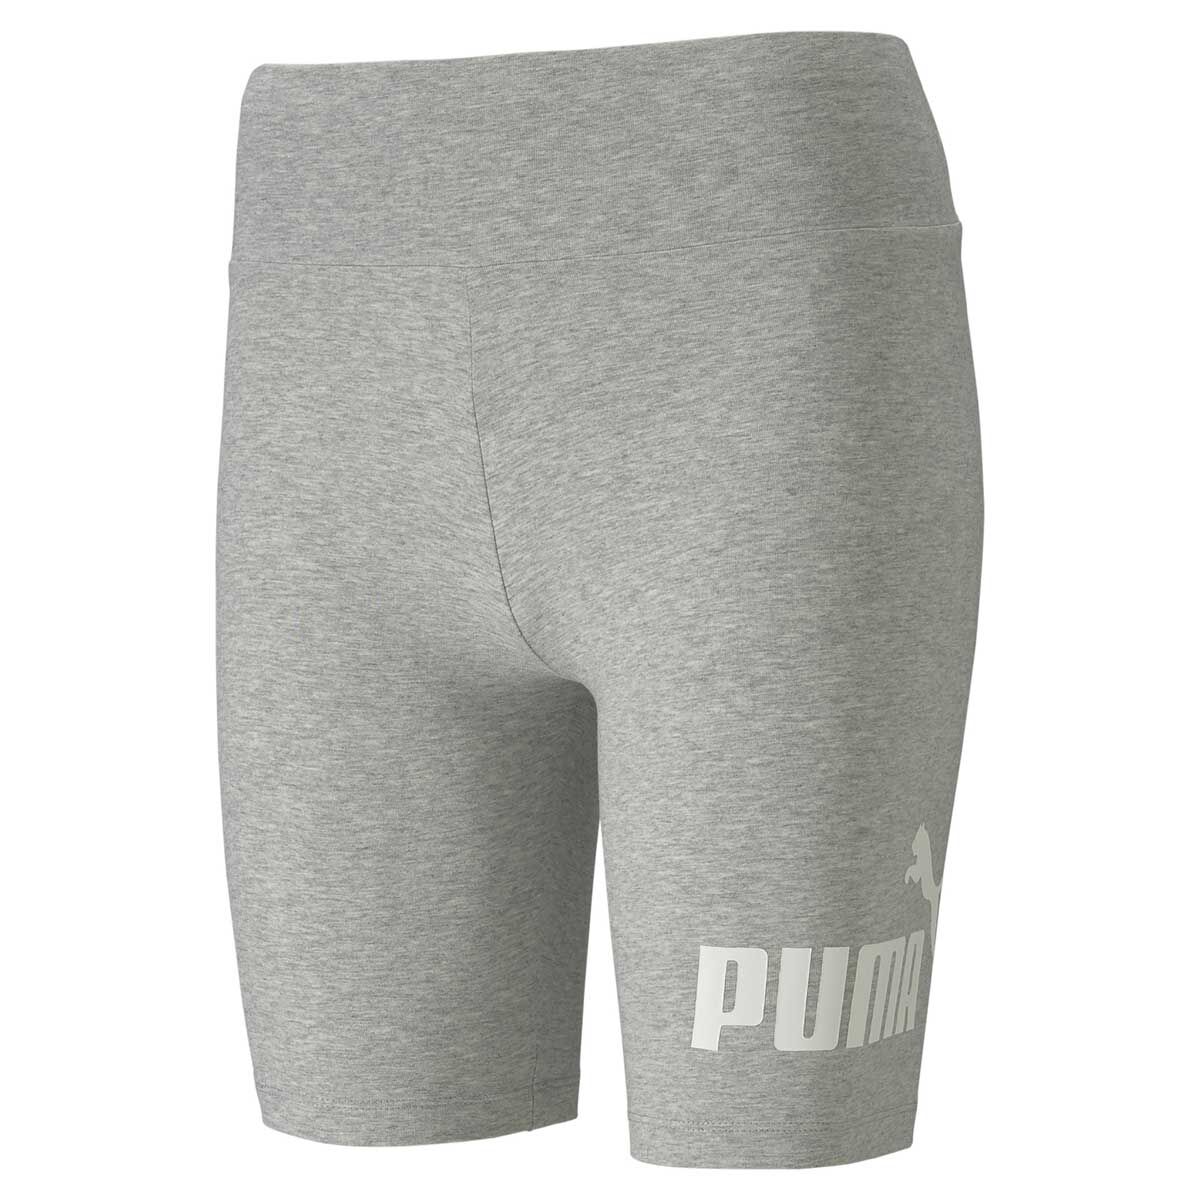 puma 7 inch shorts